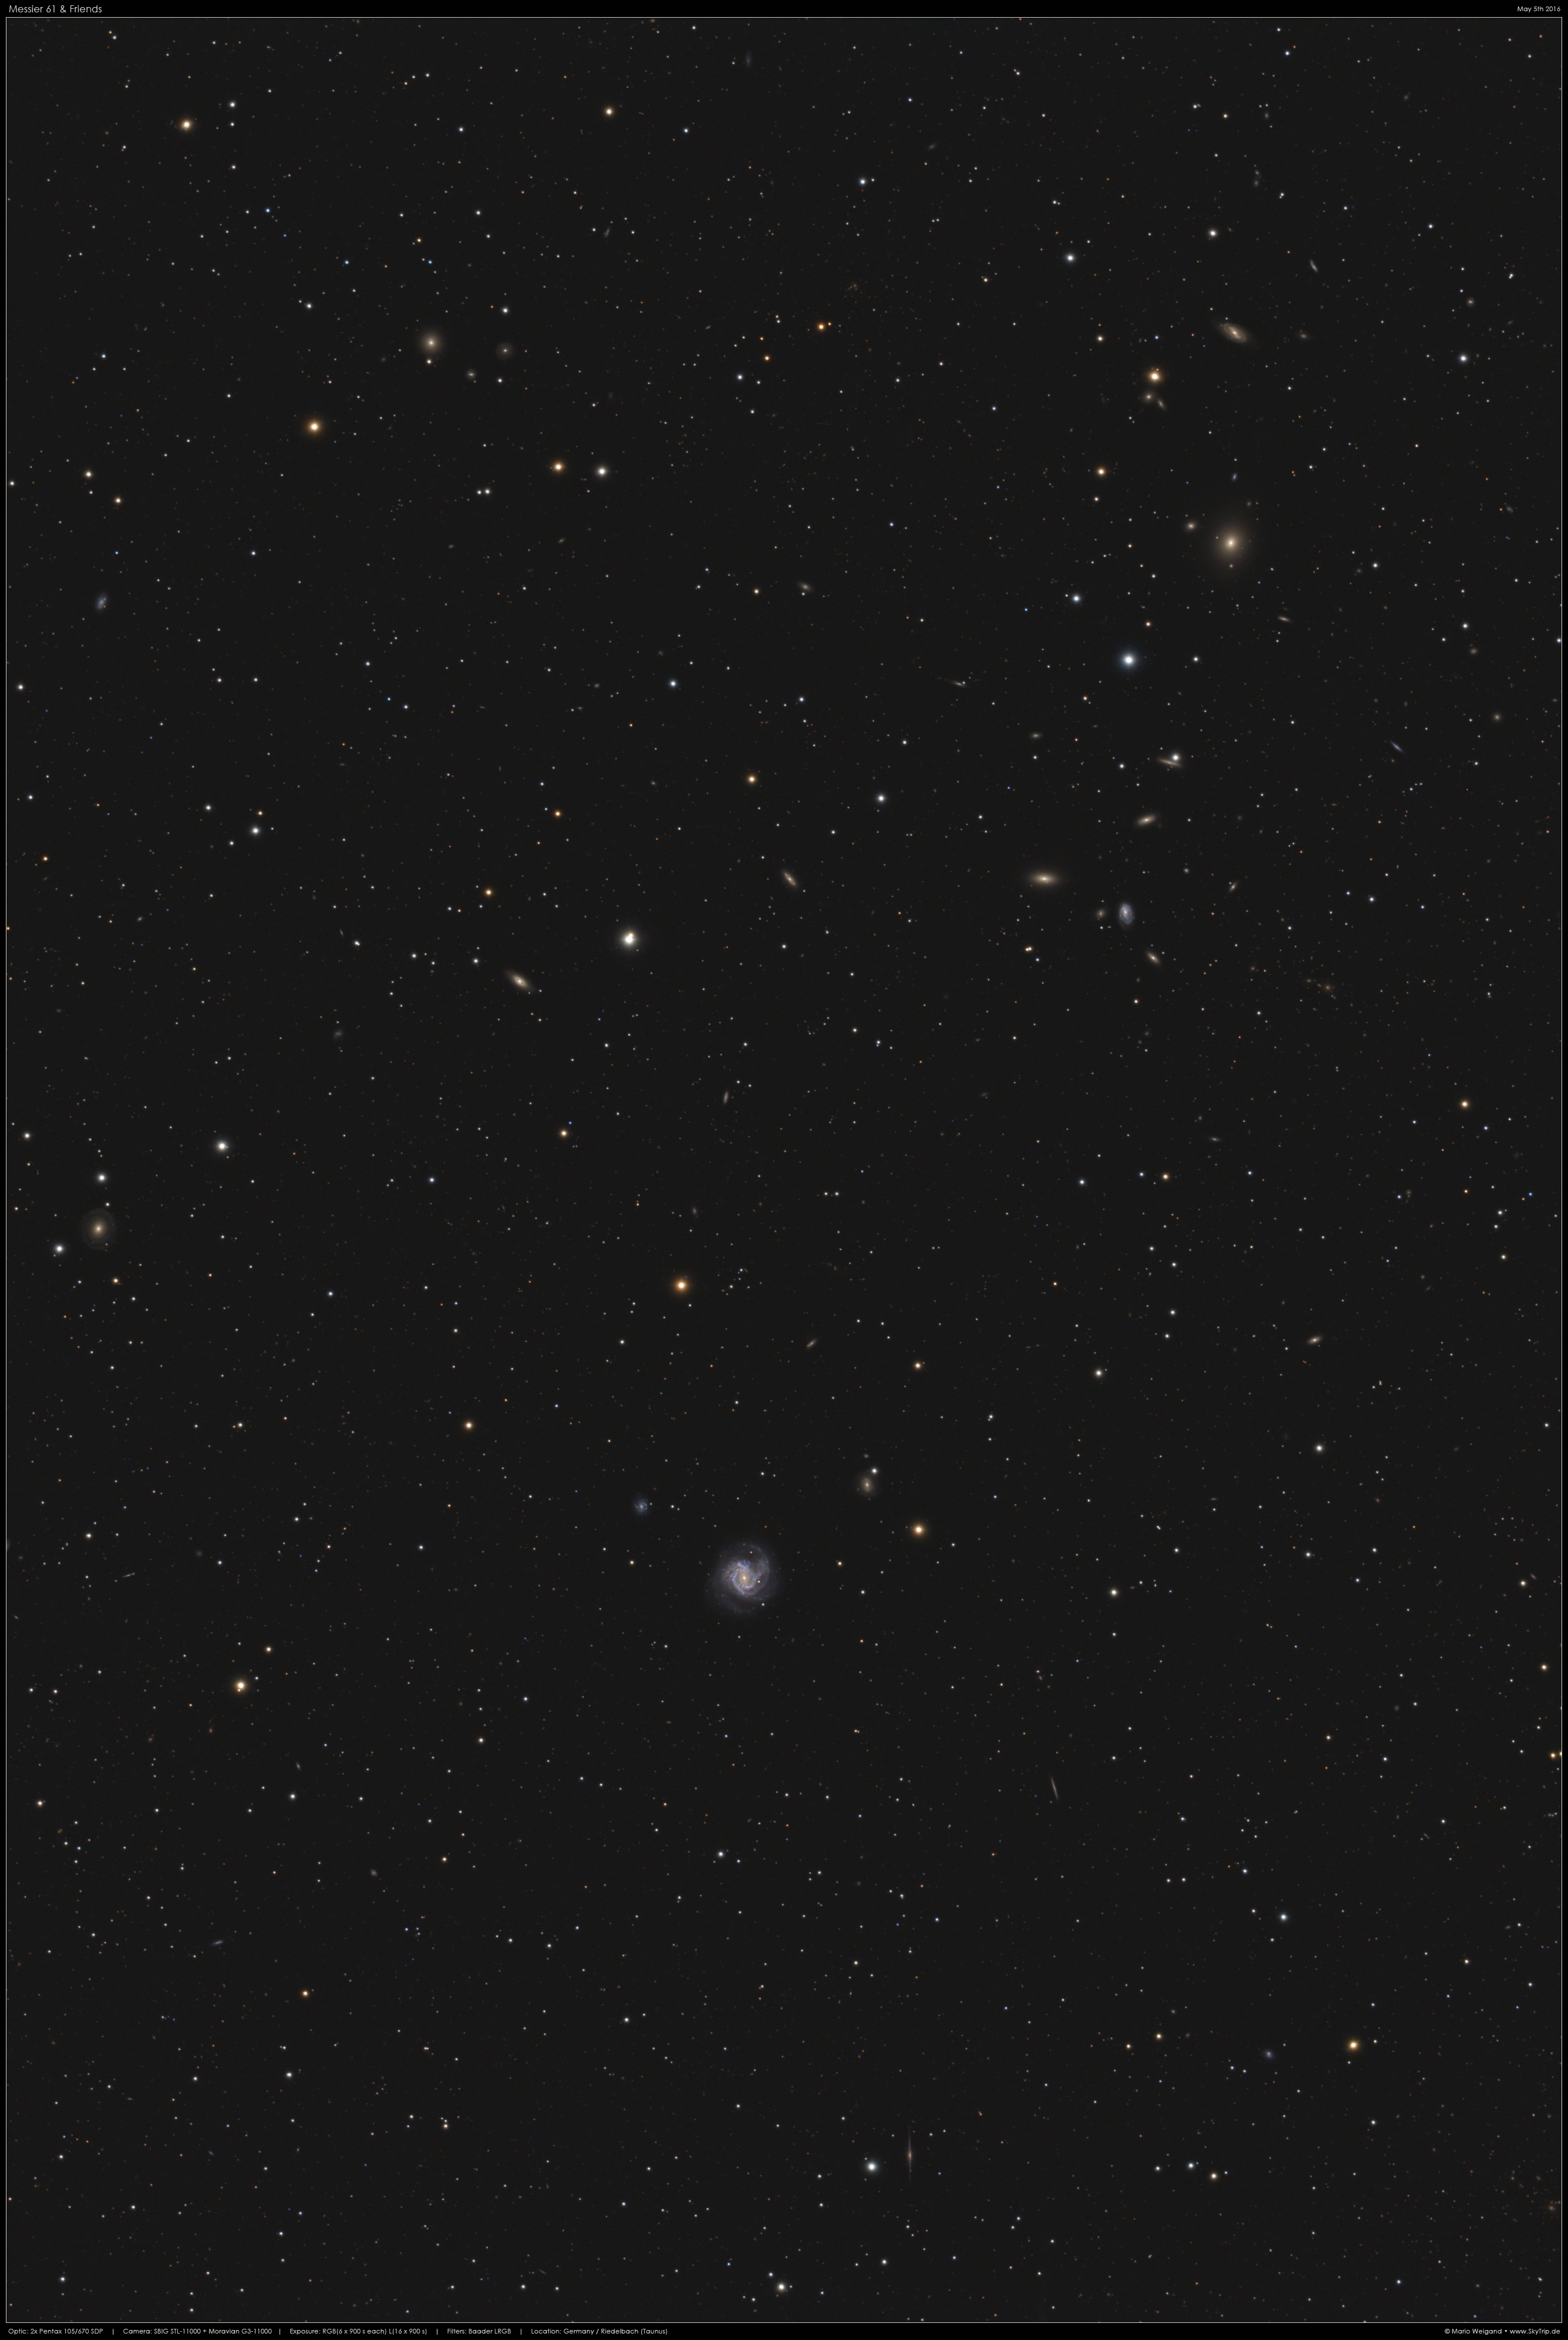 Virgohaufen: Messier 61 & Friends